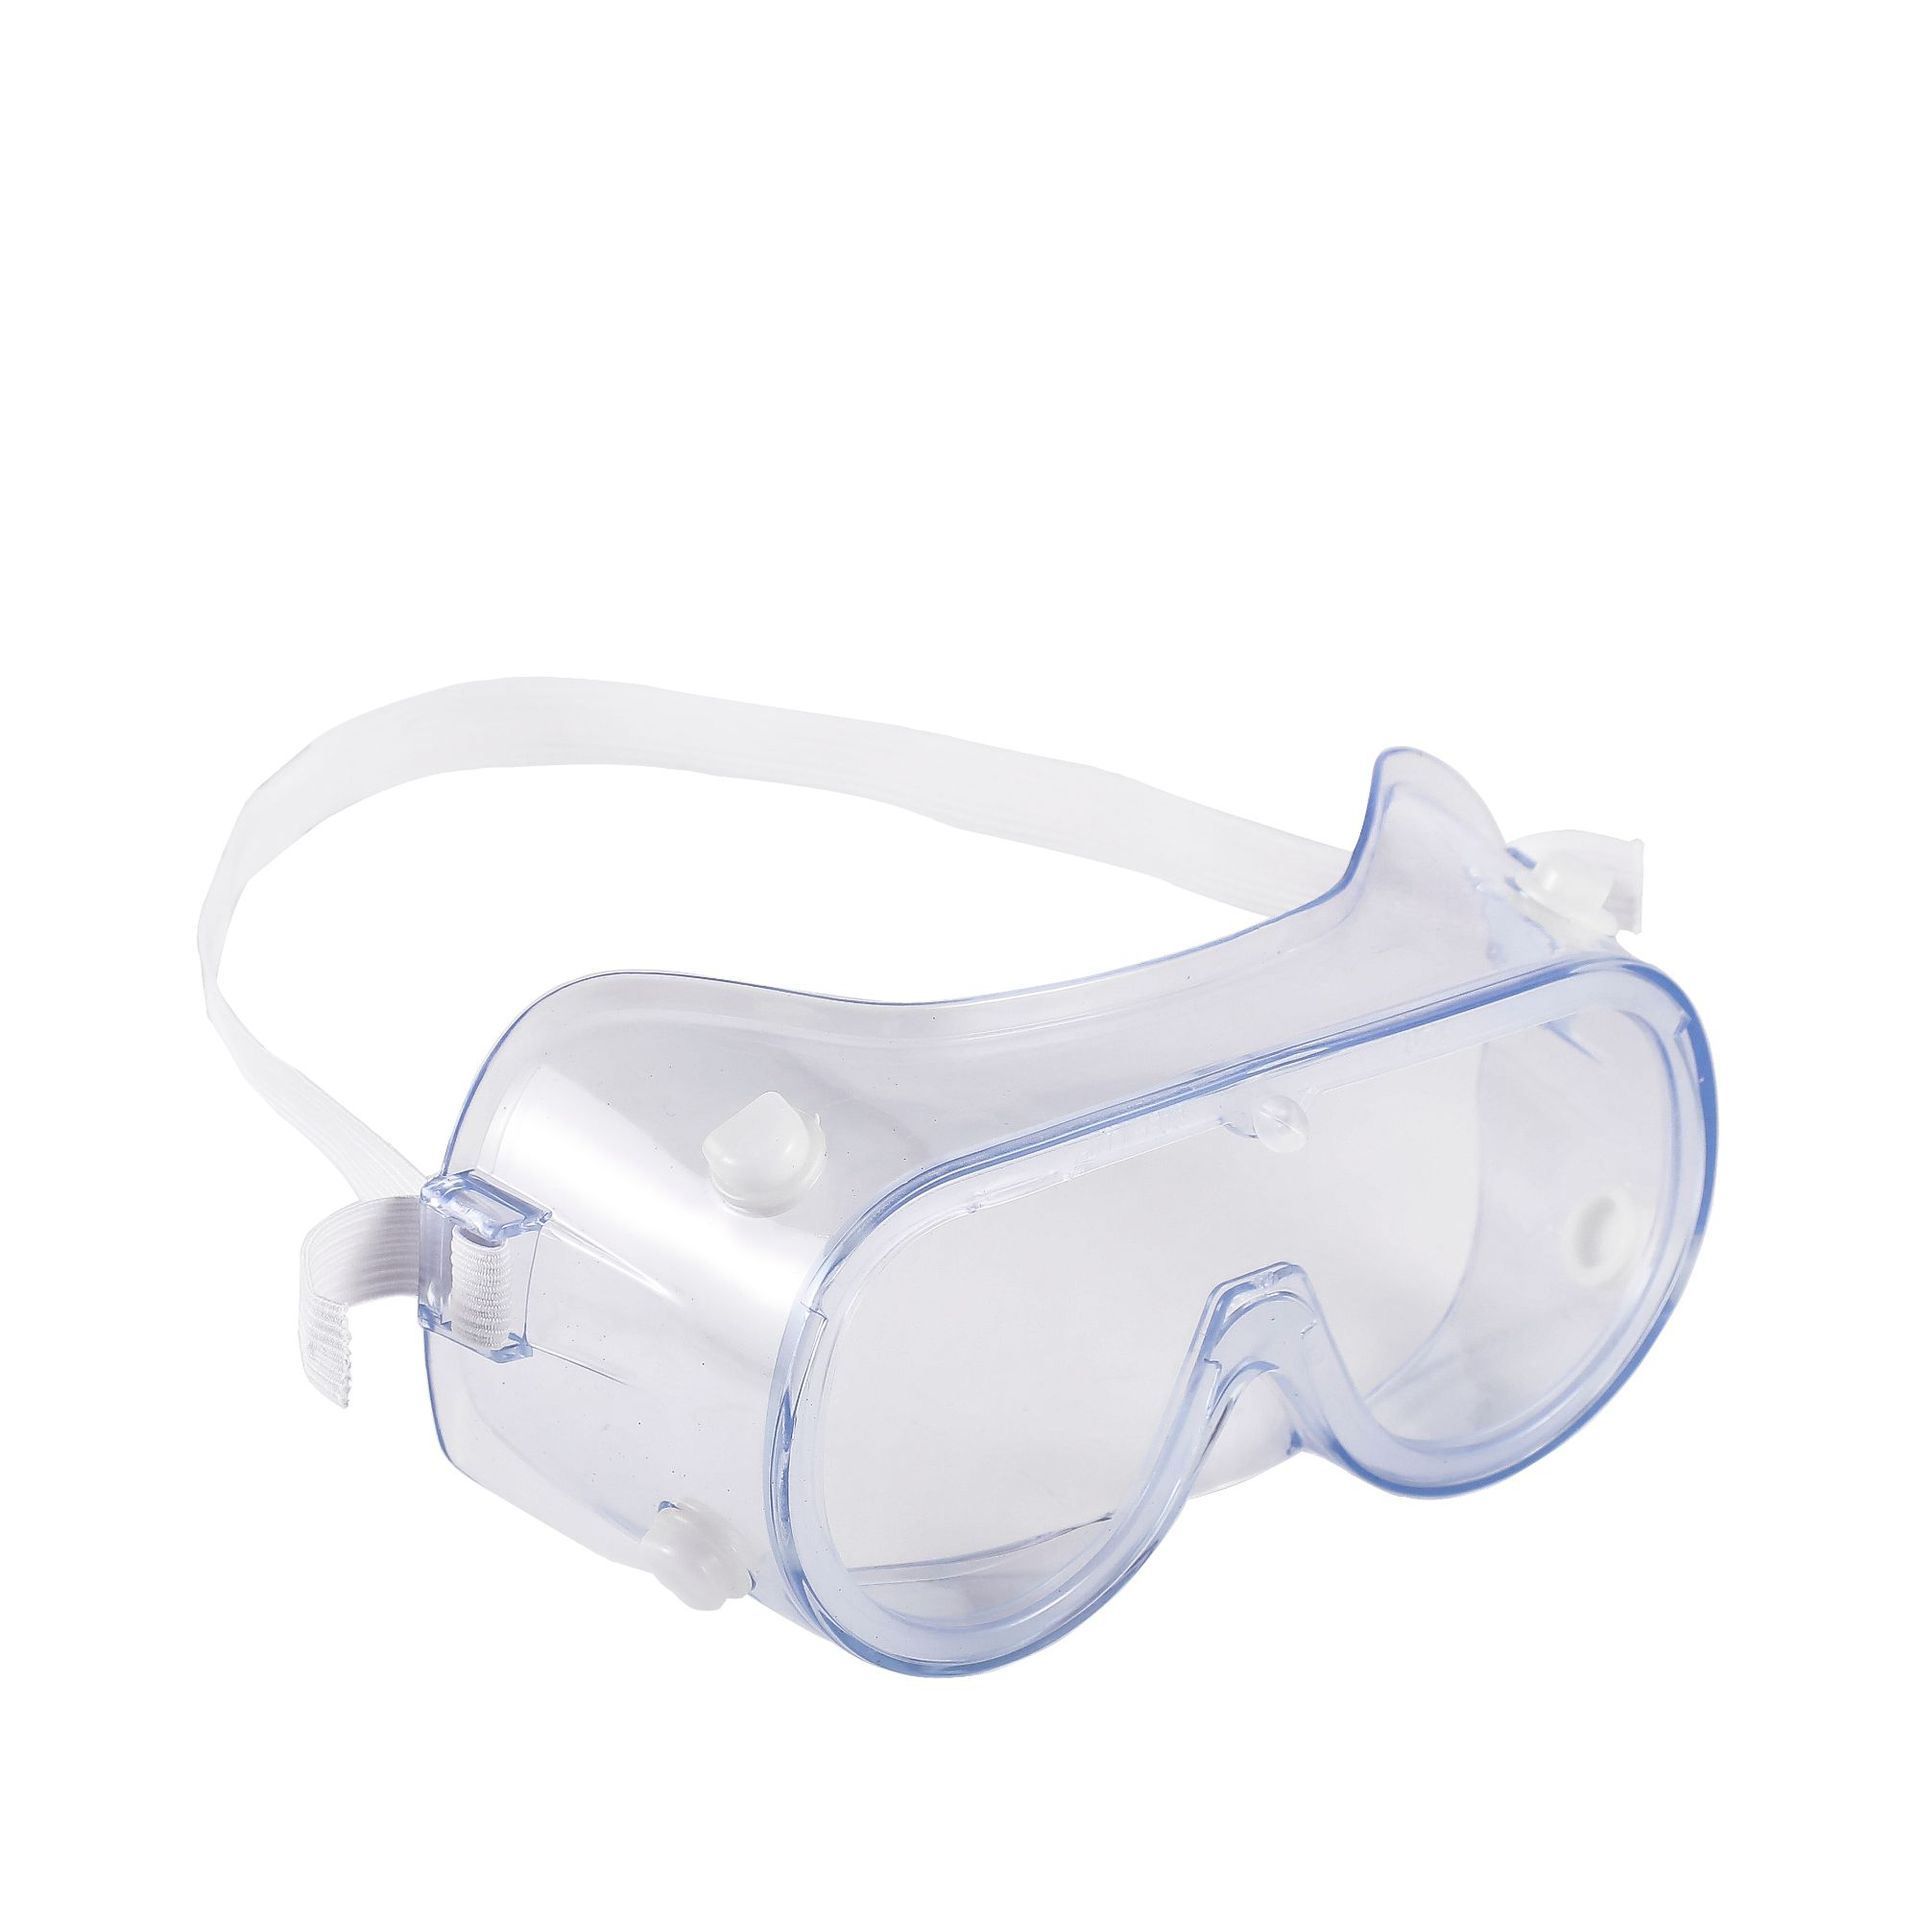 Wysokiej jakości okulary ochronne okulary do pracy w laboratorium przemysłowym okulary ochronne okulary ochronne okulary wykonane w Chinach